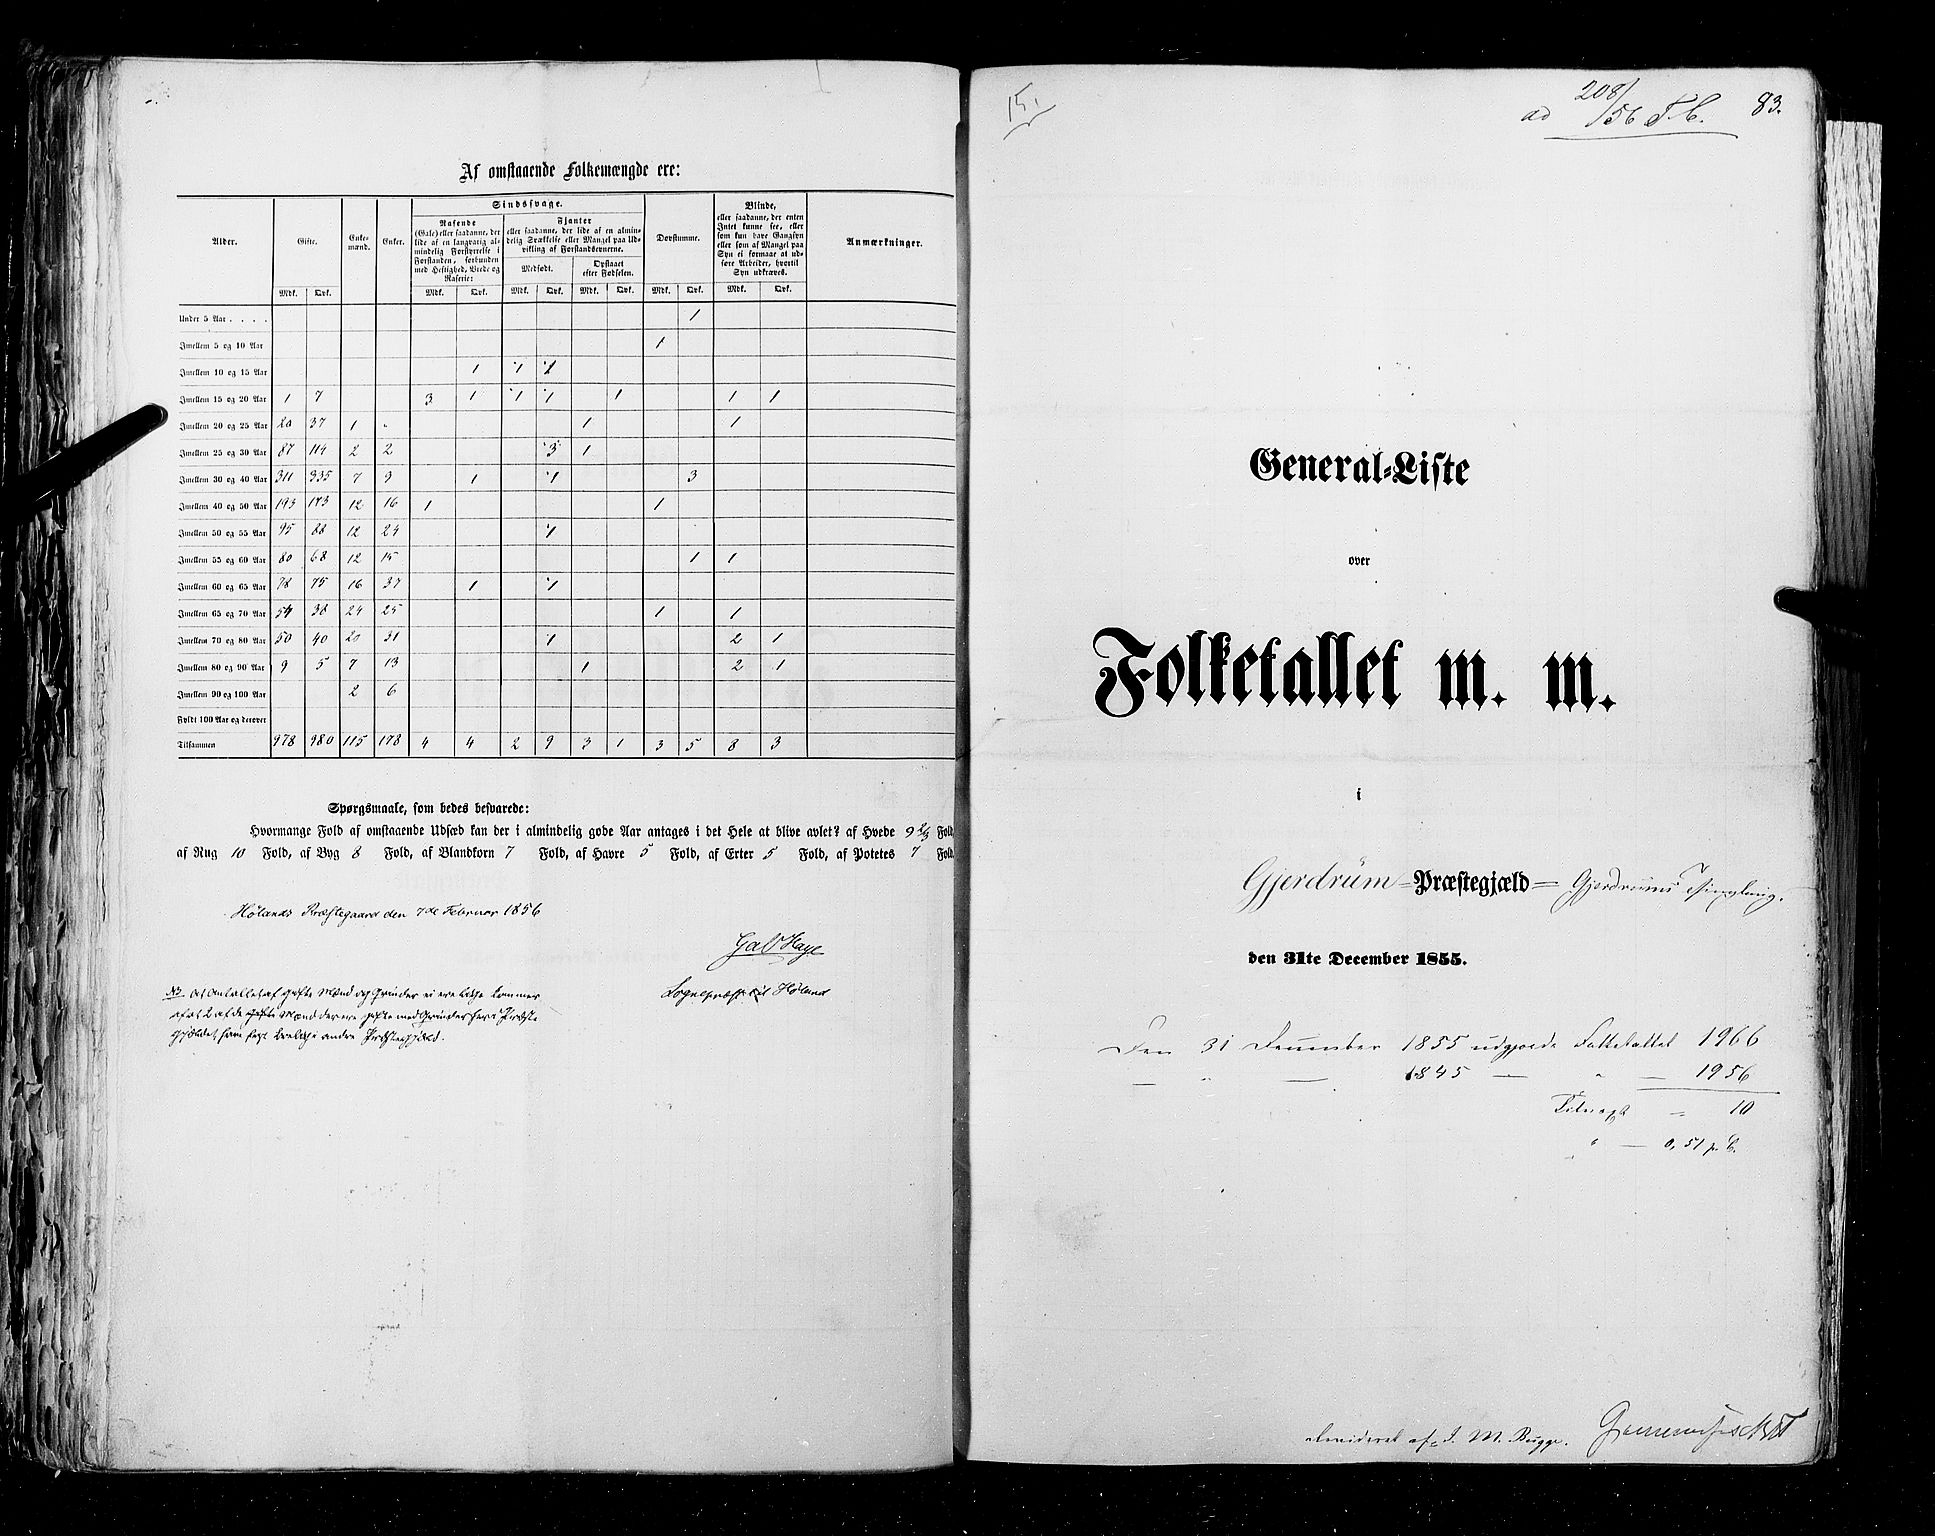 RA, Census 1855, vol. 1: Akershus amt, Smålenenes amt og Hedemarken amt, 1855, p. 83